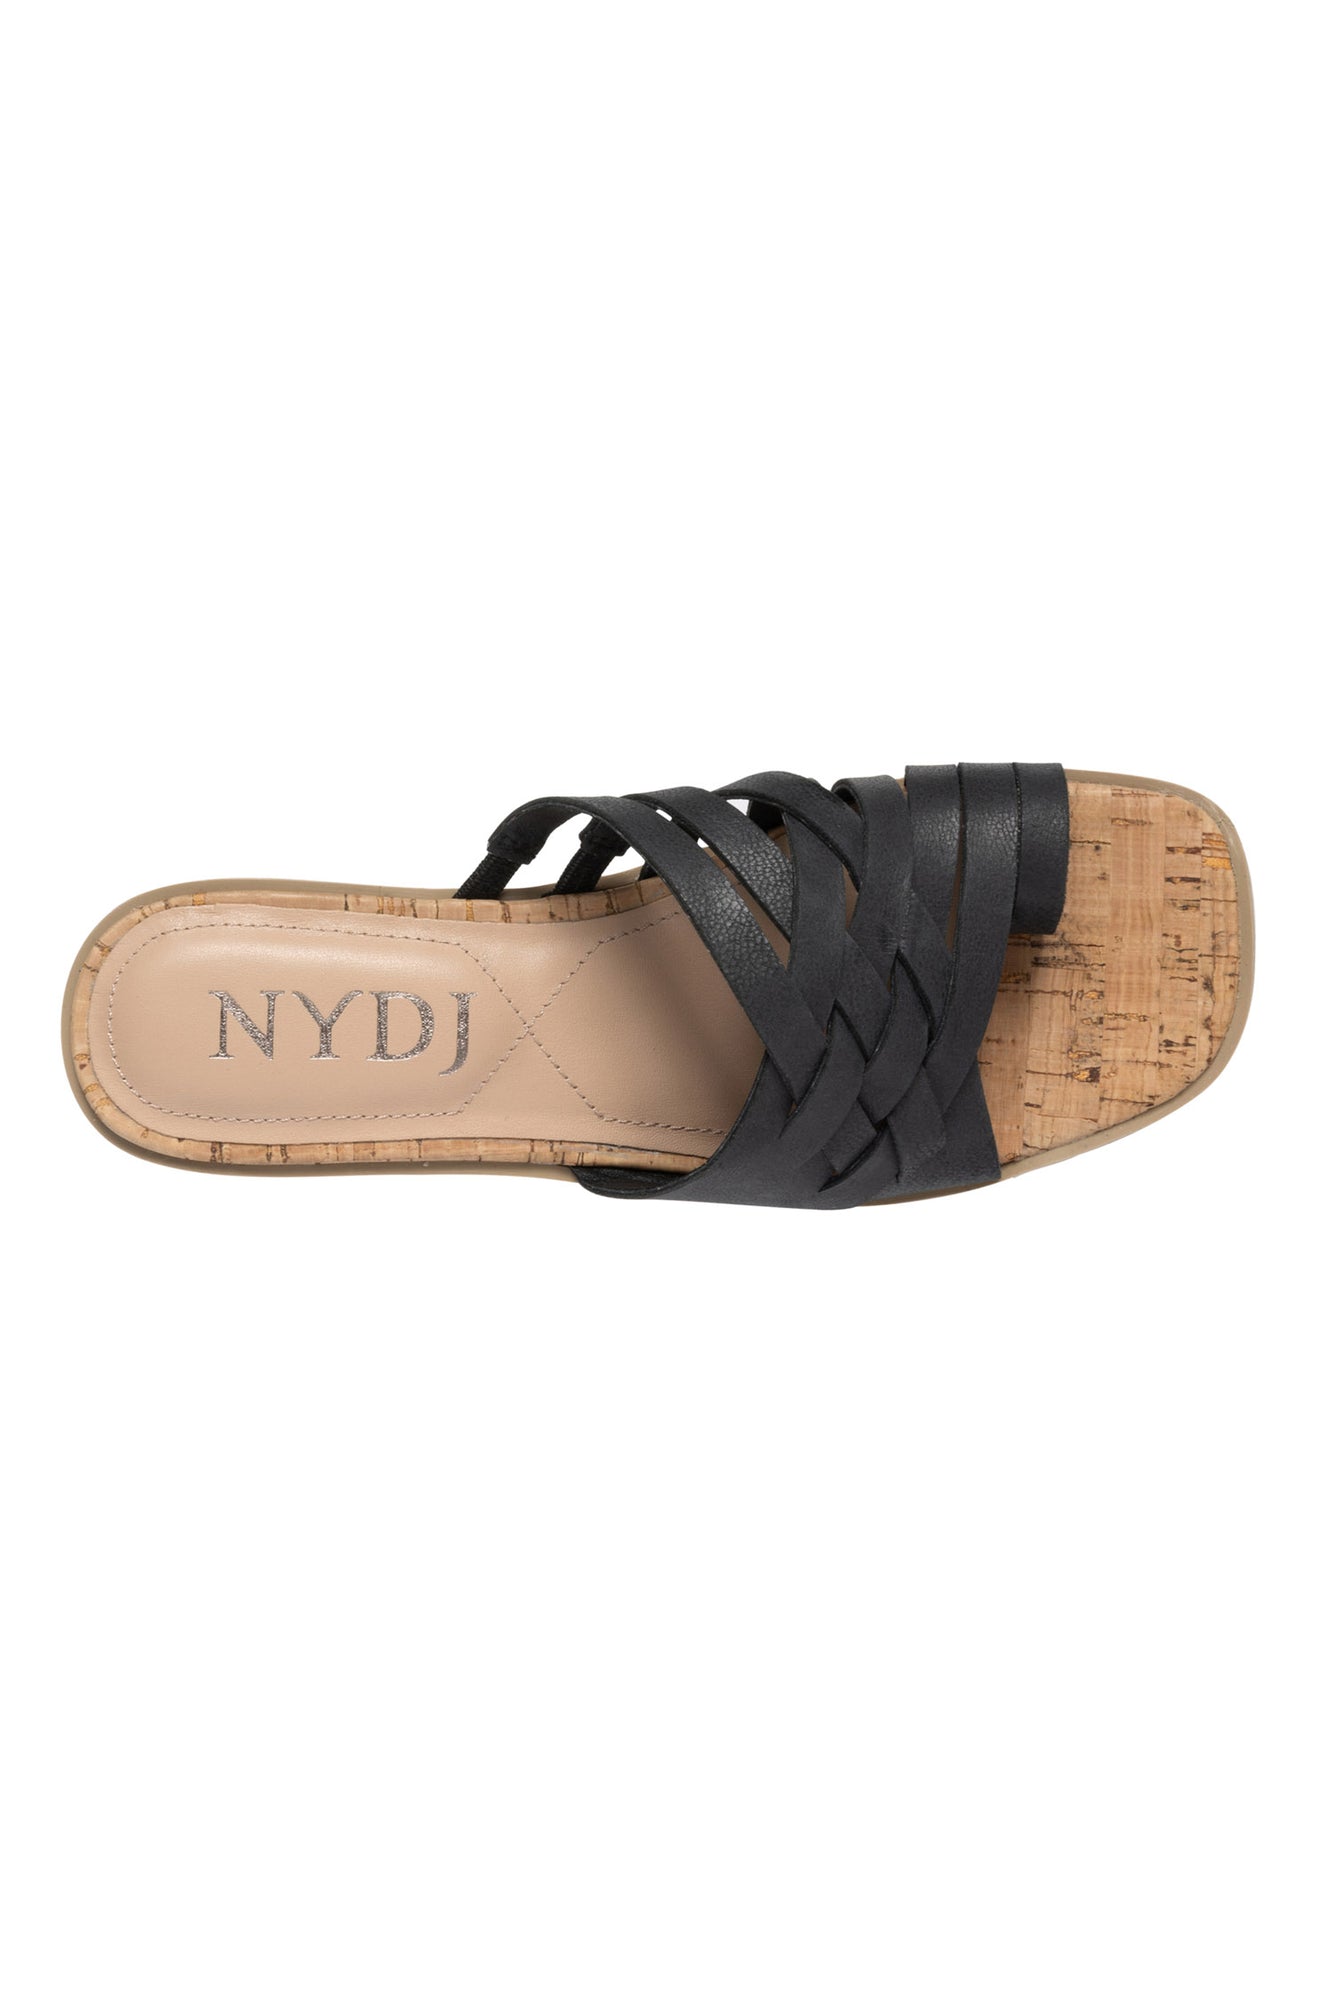 NYDJ Reesie Wedge Sandals In Leather - Black